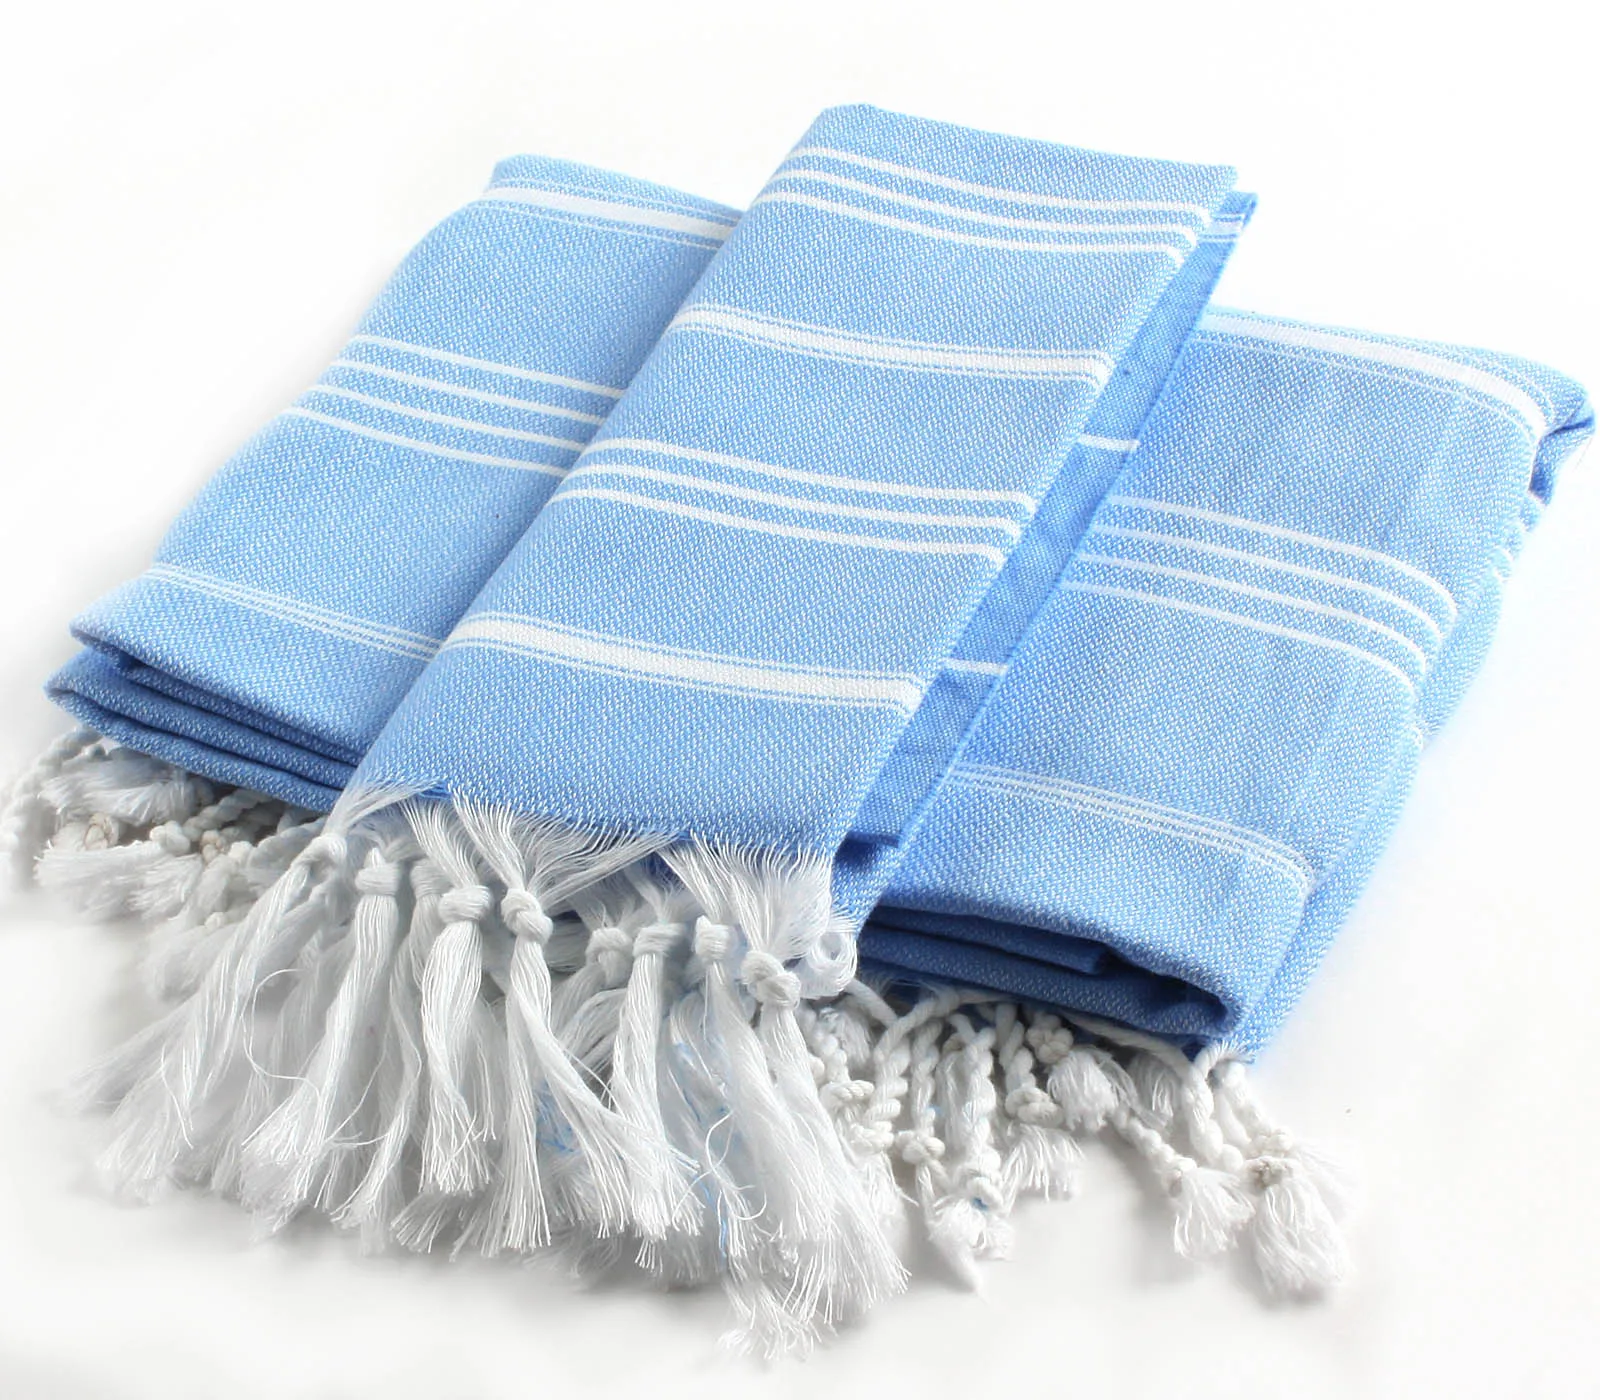 CACALA %100 Cotton 2 Pieces Turkish Towel Pestemal Set - 1 Piece 100x180Cm Bath Beach Towel 1 Piece 60x90Cm Hand Face Towel